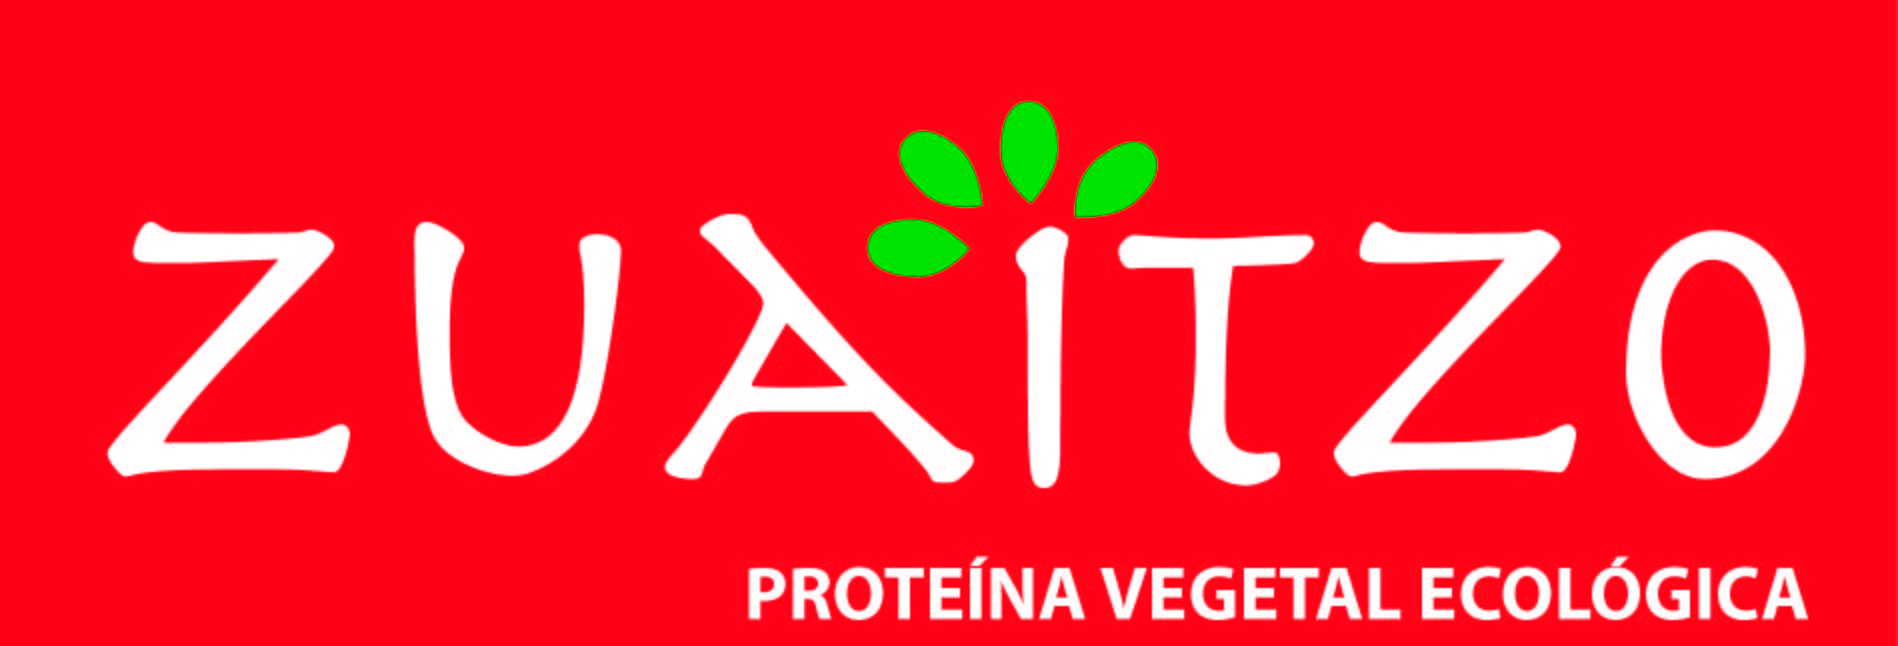 ZUAITZO SABOR Y SALUD – Empresa – Alimentación Ecológica – Elaboración Artesanal de tofu y seitan